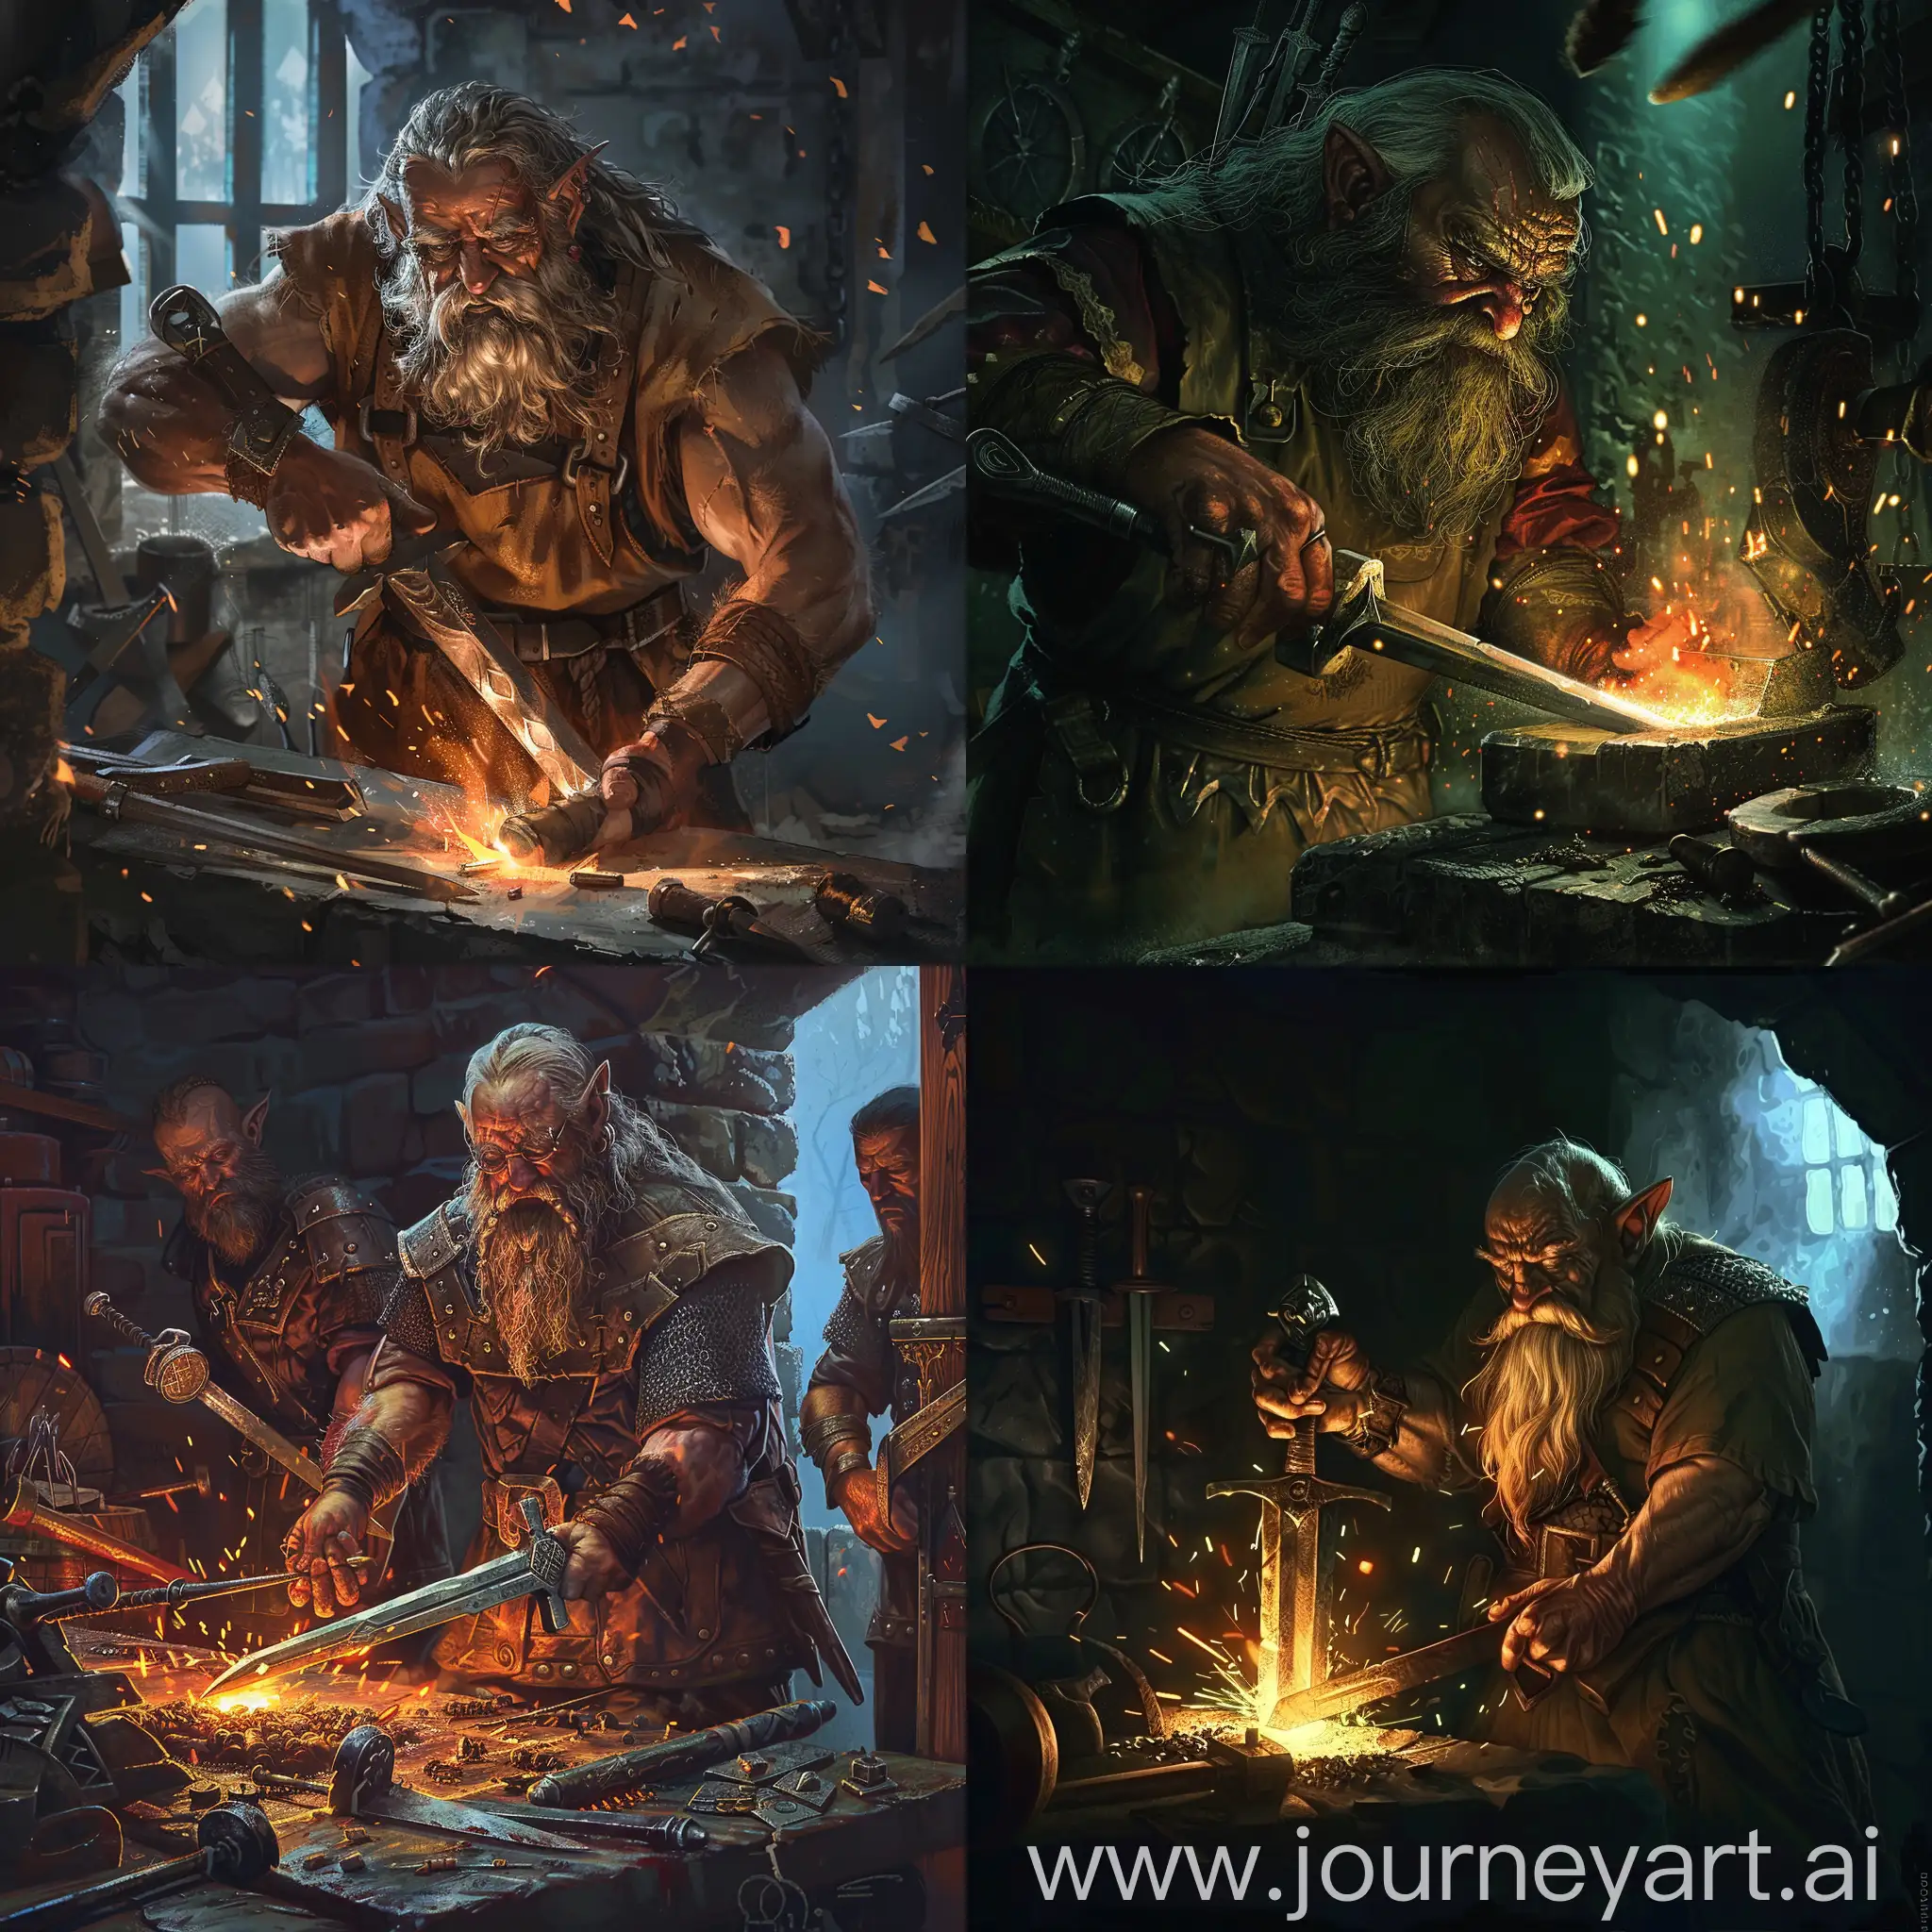 Dwarf-Blacksmith-Crafting-a-Dark-Fantasy-Sword